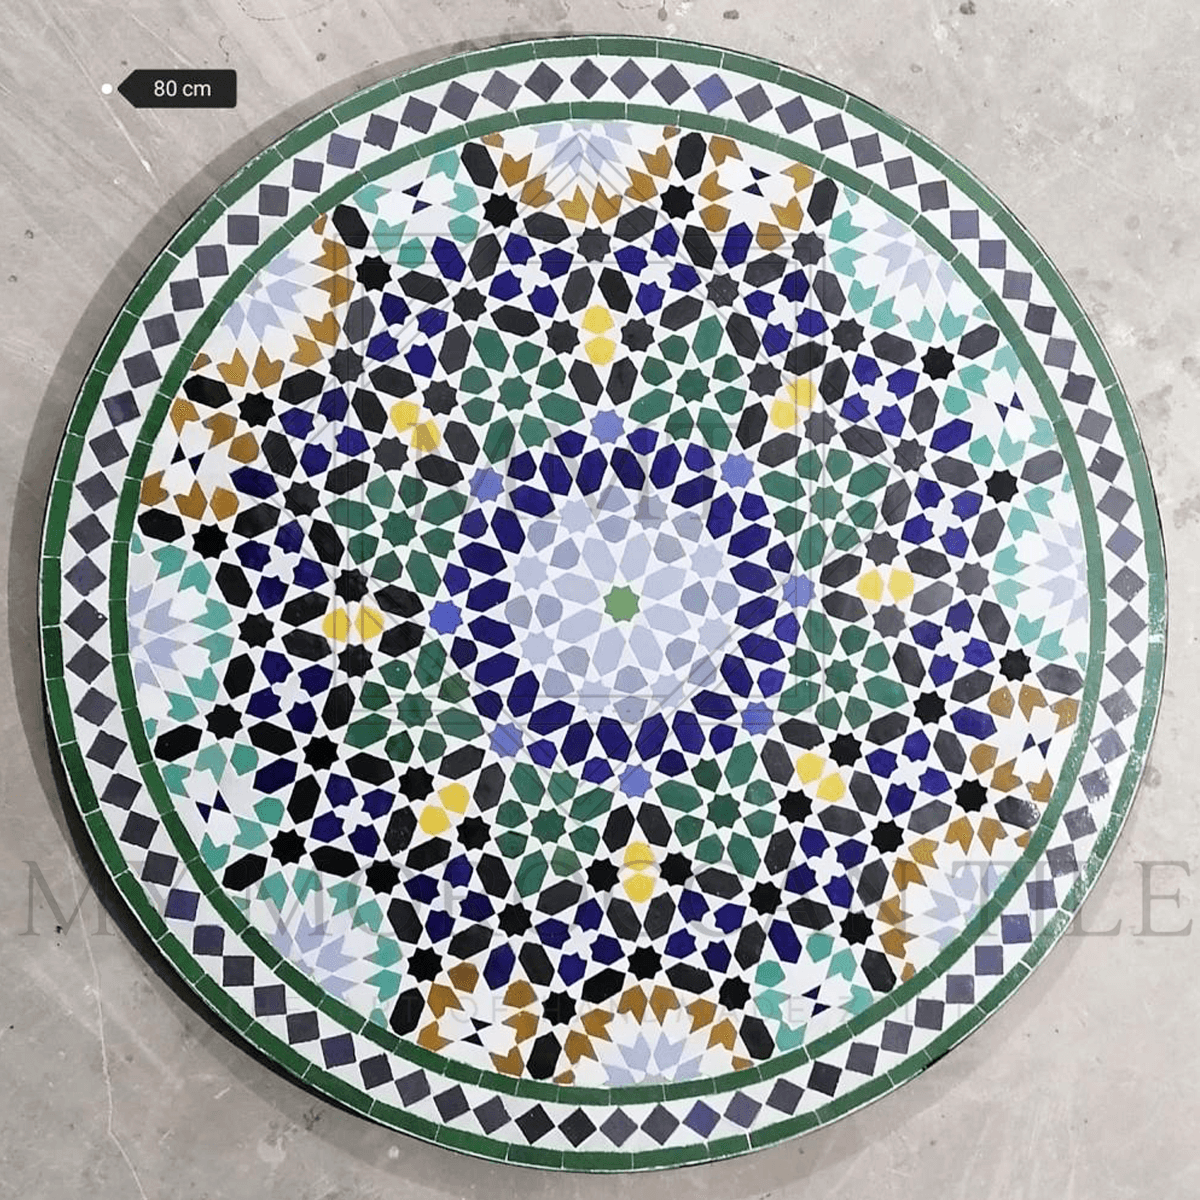 Table en mosaïque marocaine faite à la main 2108-16